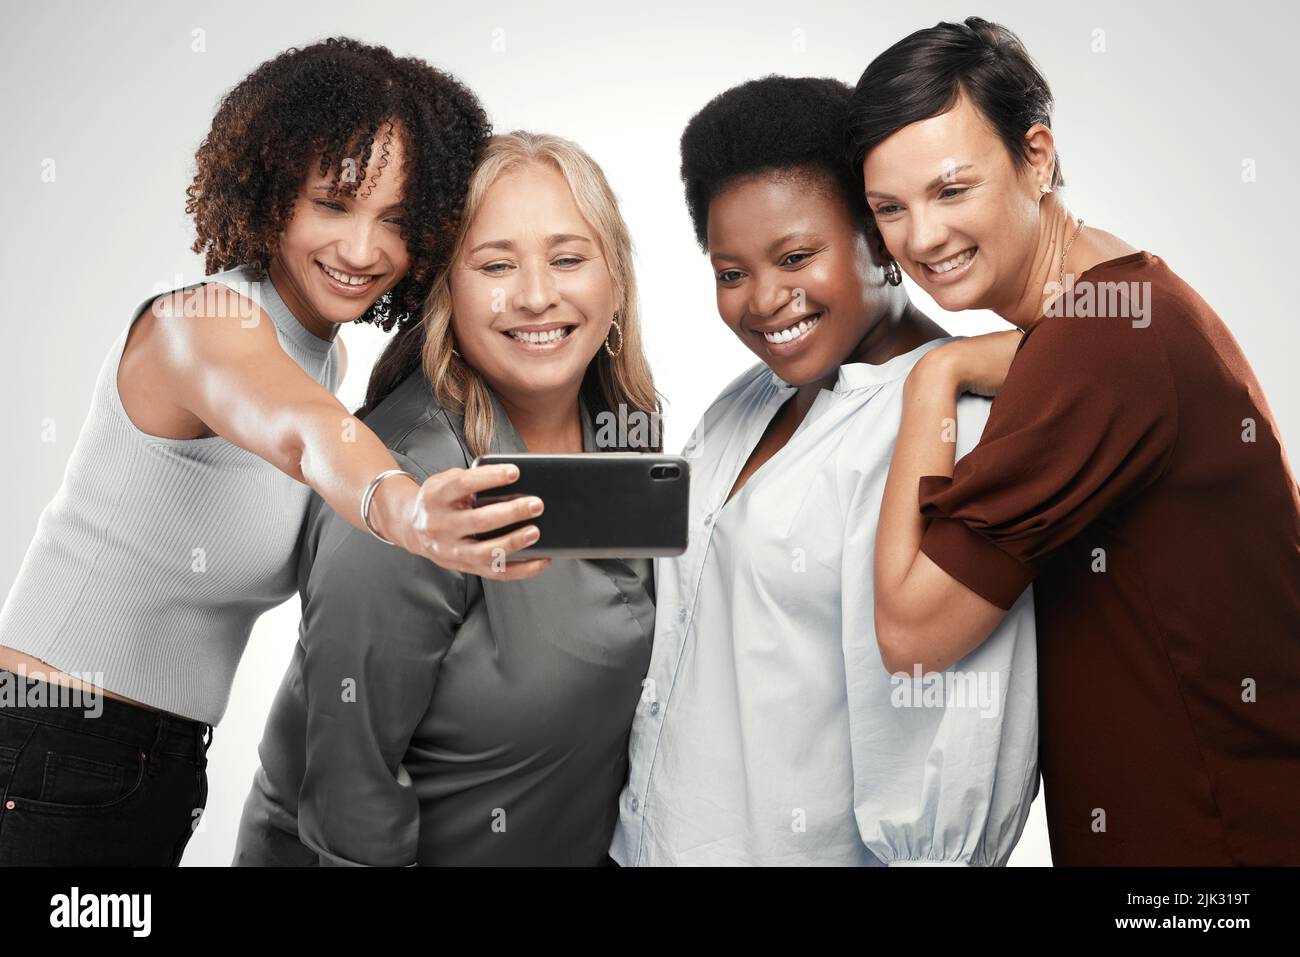 Digamos queso, damas. Un grupo diverso de mujeres que se encuentran juntas en el estudio y toman un selfie con un celular. Foto de stock